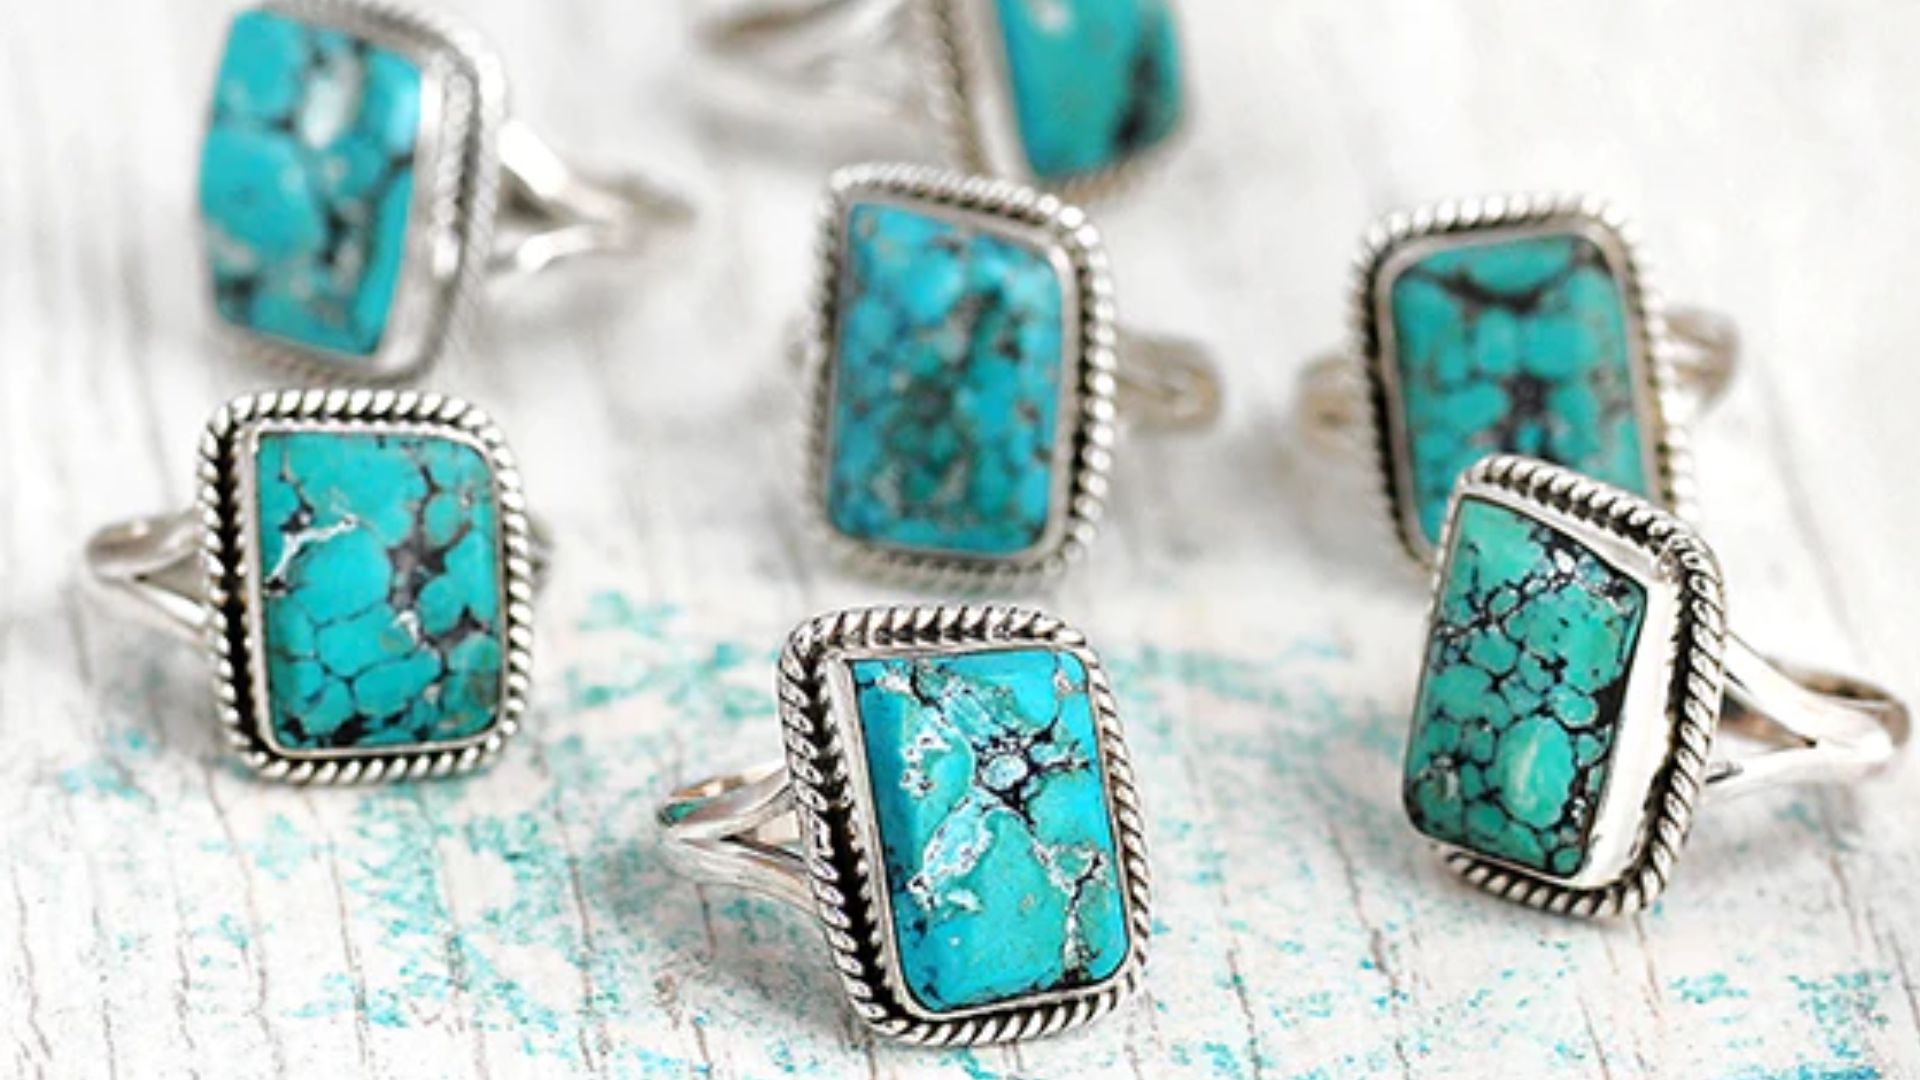 Blue Gemstones Embedded In Rings